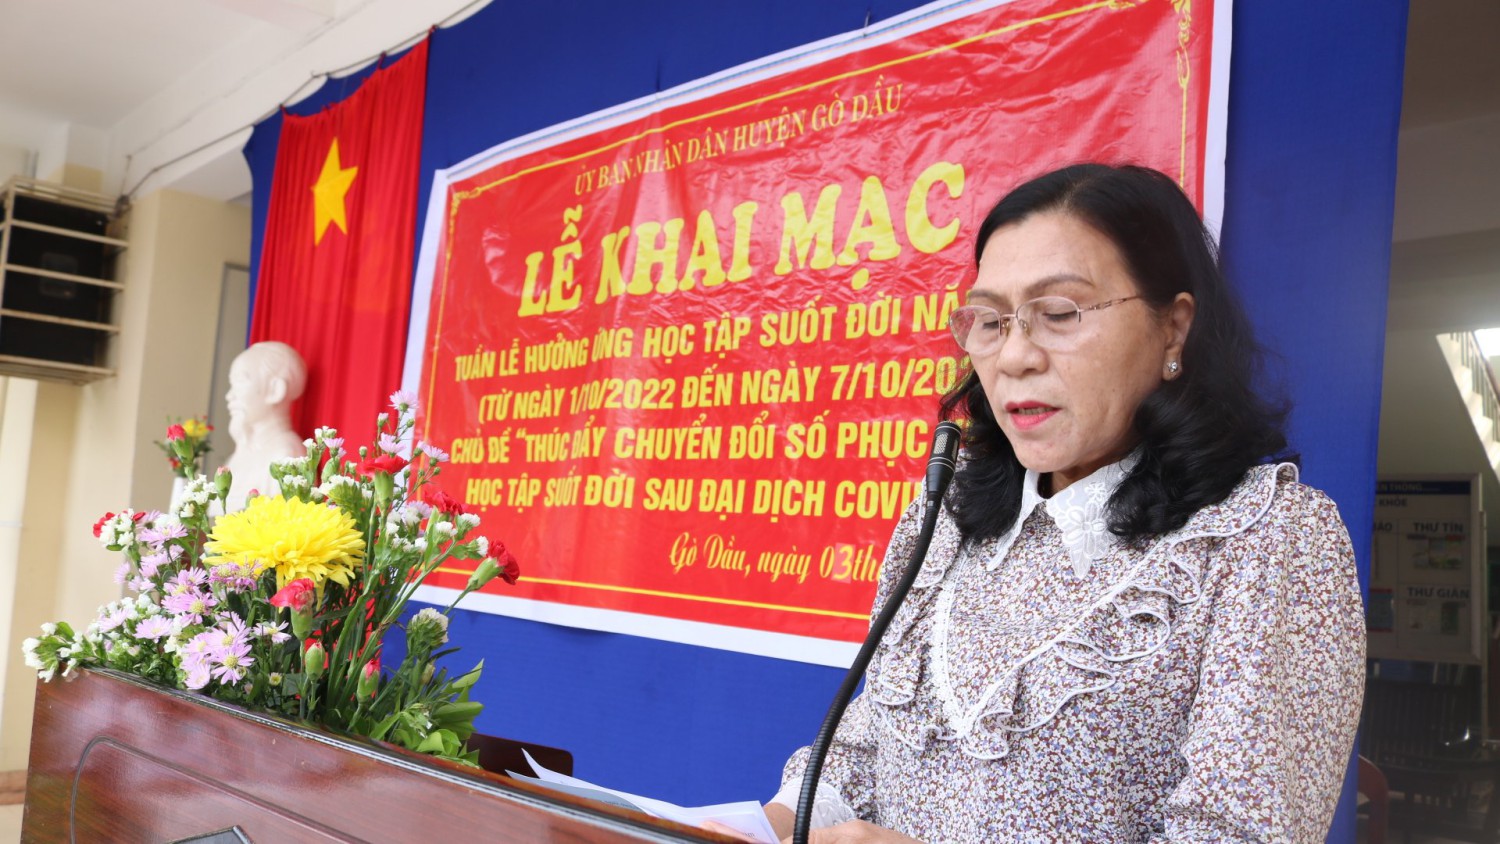 Bà Trương Thị Phú- Phó chủ tịch UBND huyện phát động tuần lễ hưởng ứng học tập suốt đời;